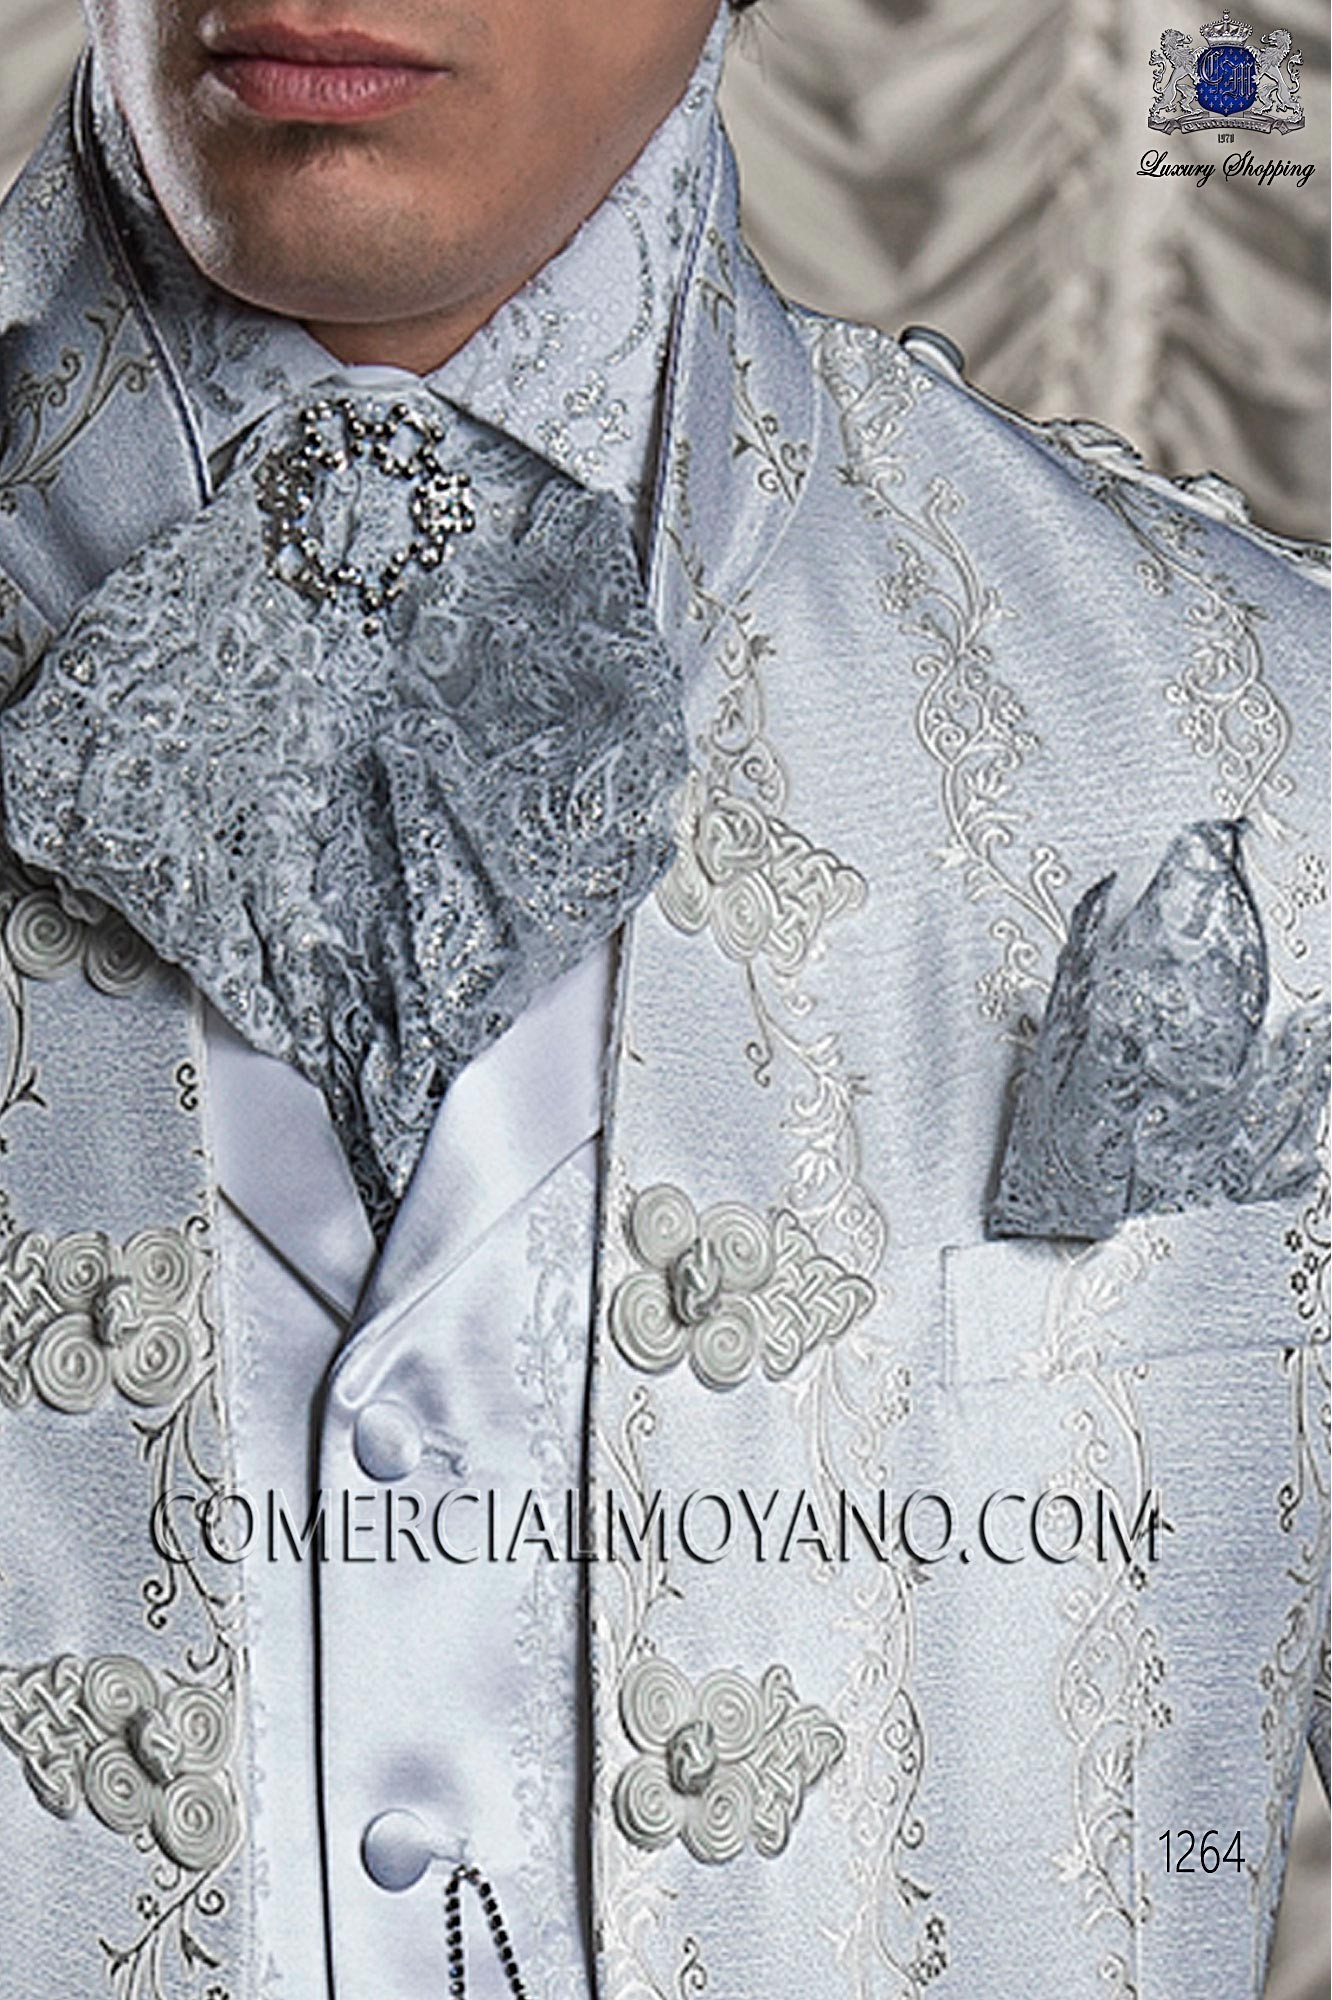 Silver lace Pre-tied tie with handkerchief, Mario Moreno